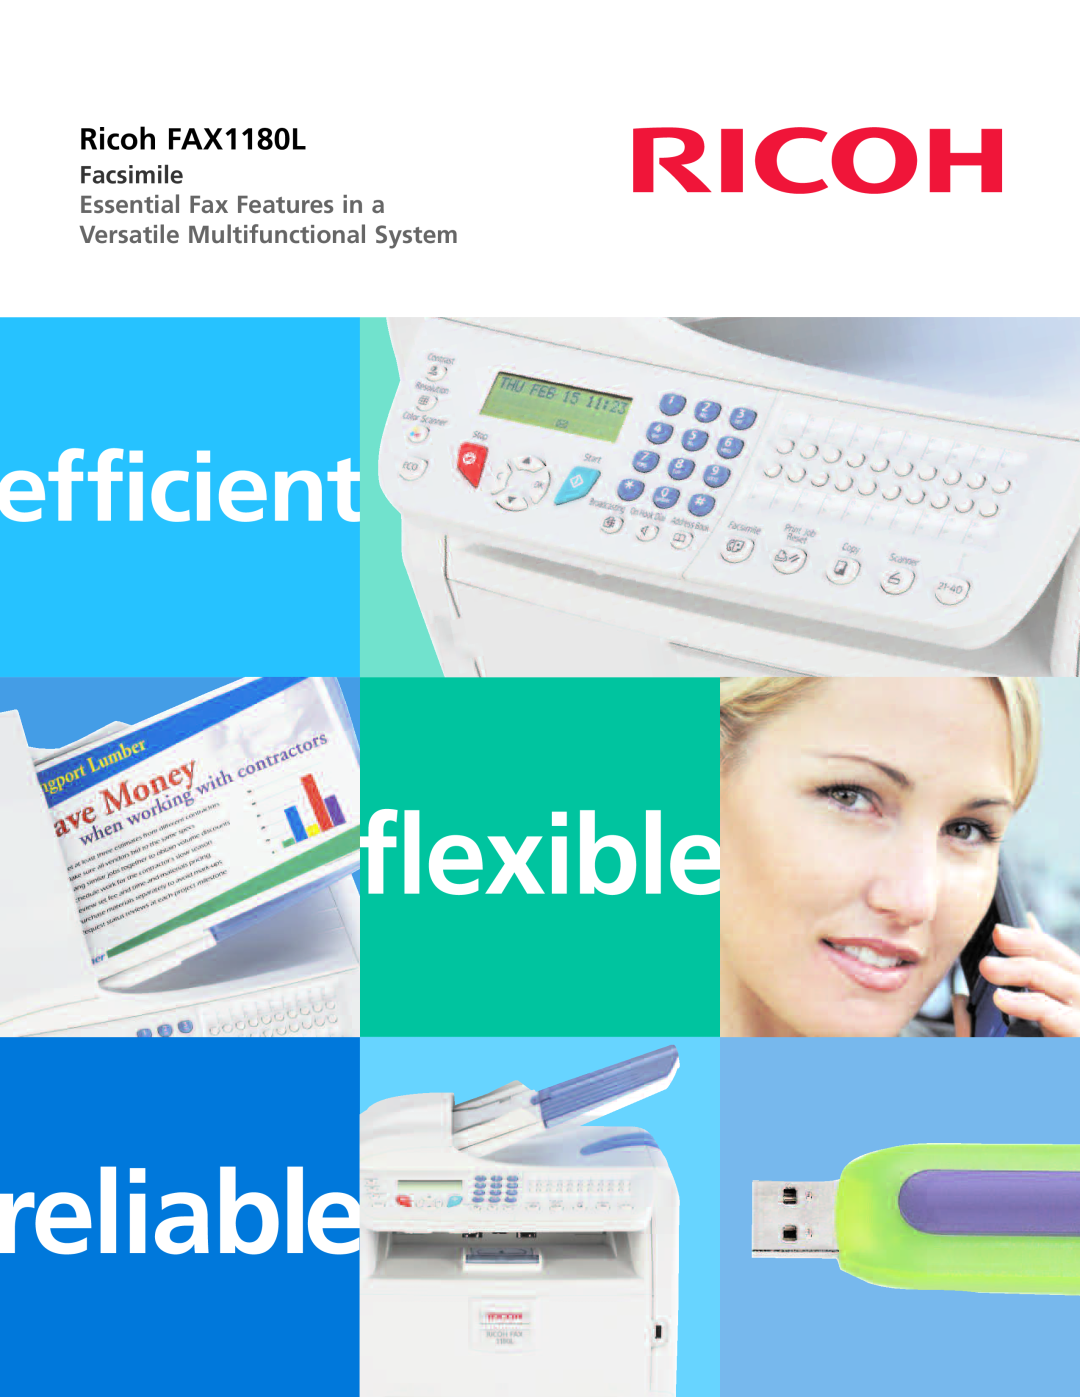 Ricoh manual reliable, flexible, efficient, Ricoh FAX1180L, Facsimile 